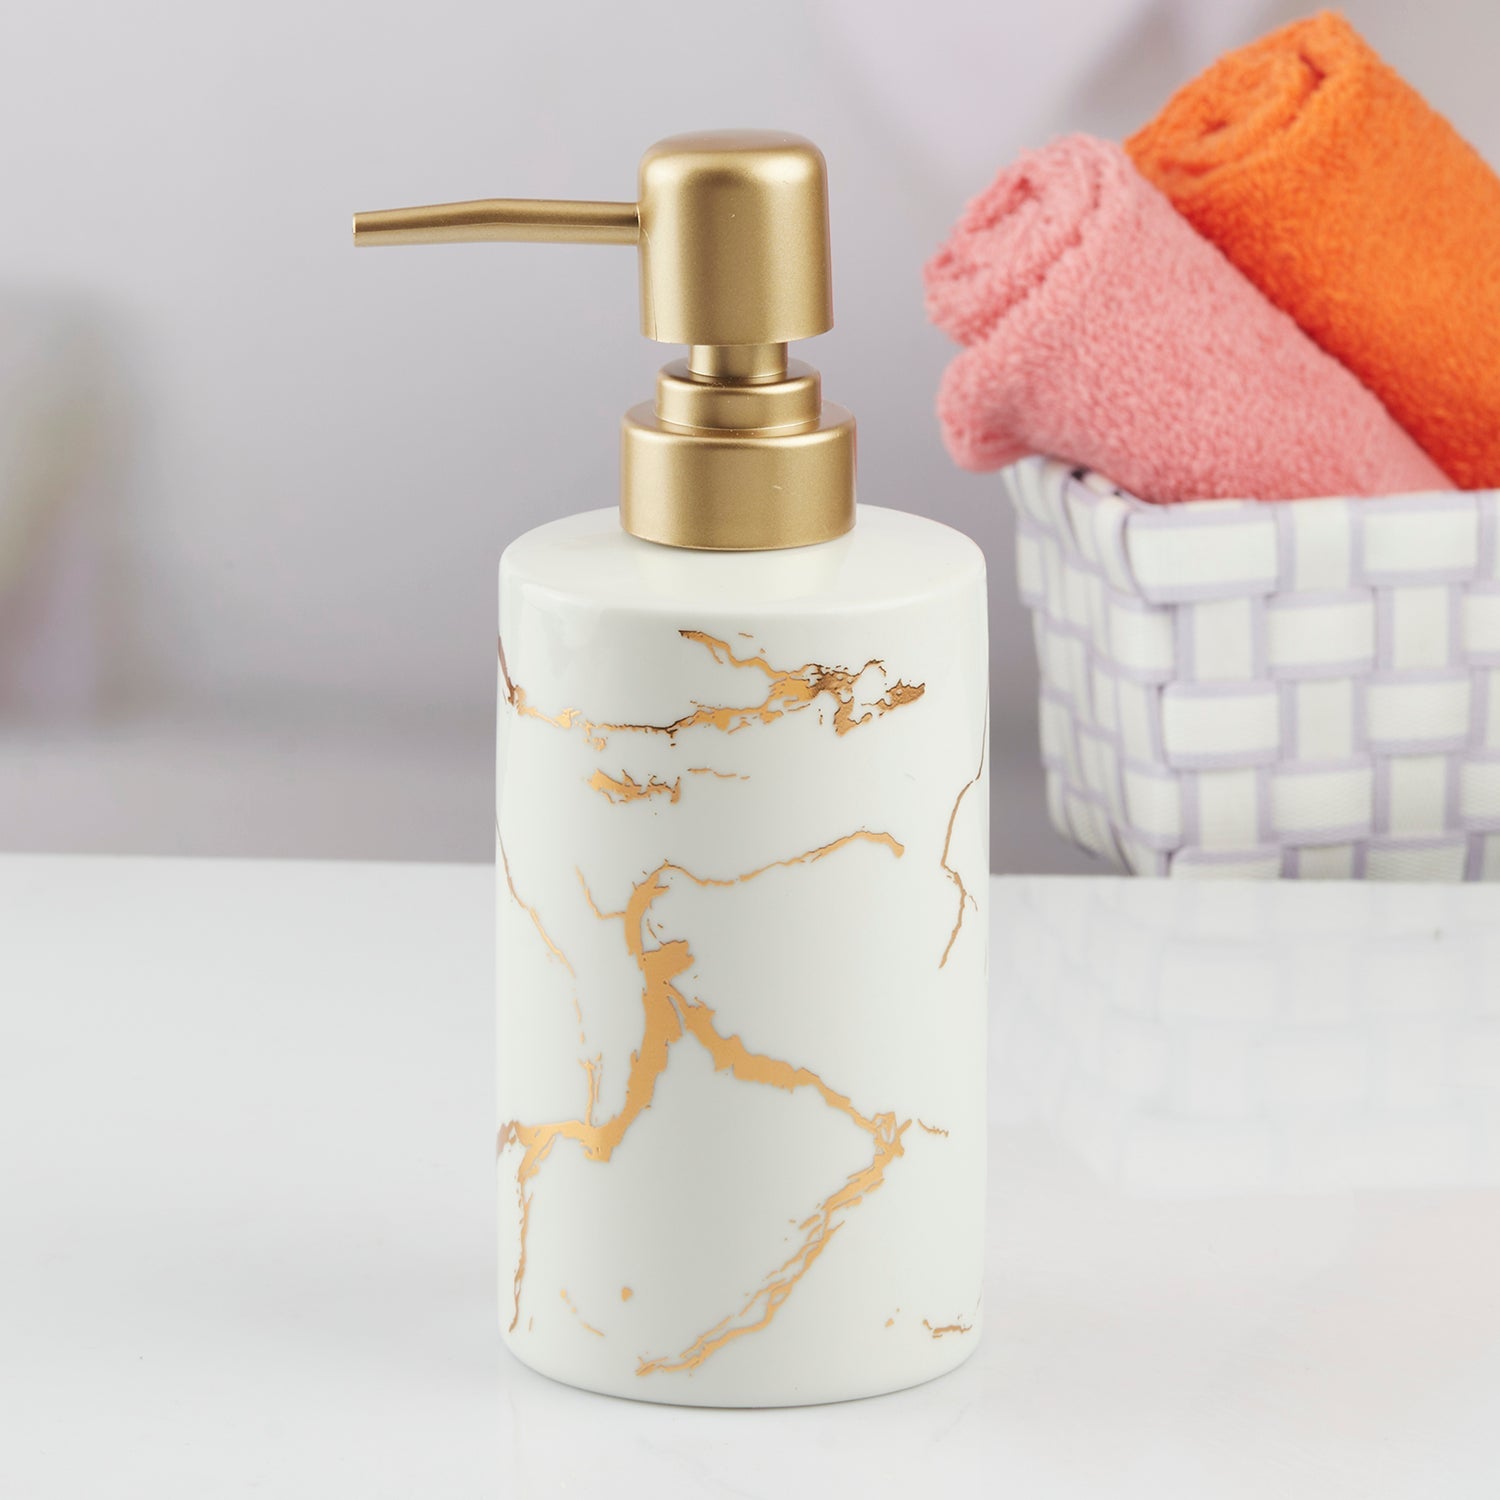 Ceramic Soap Dispenser liquid handwash pump for Bathroom, Set of 1, White/Gold (10592)